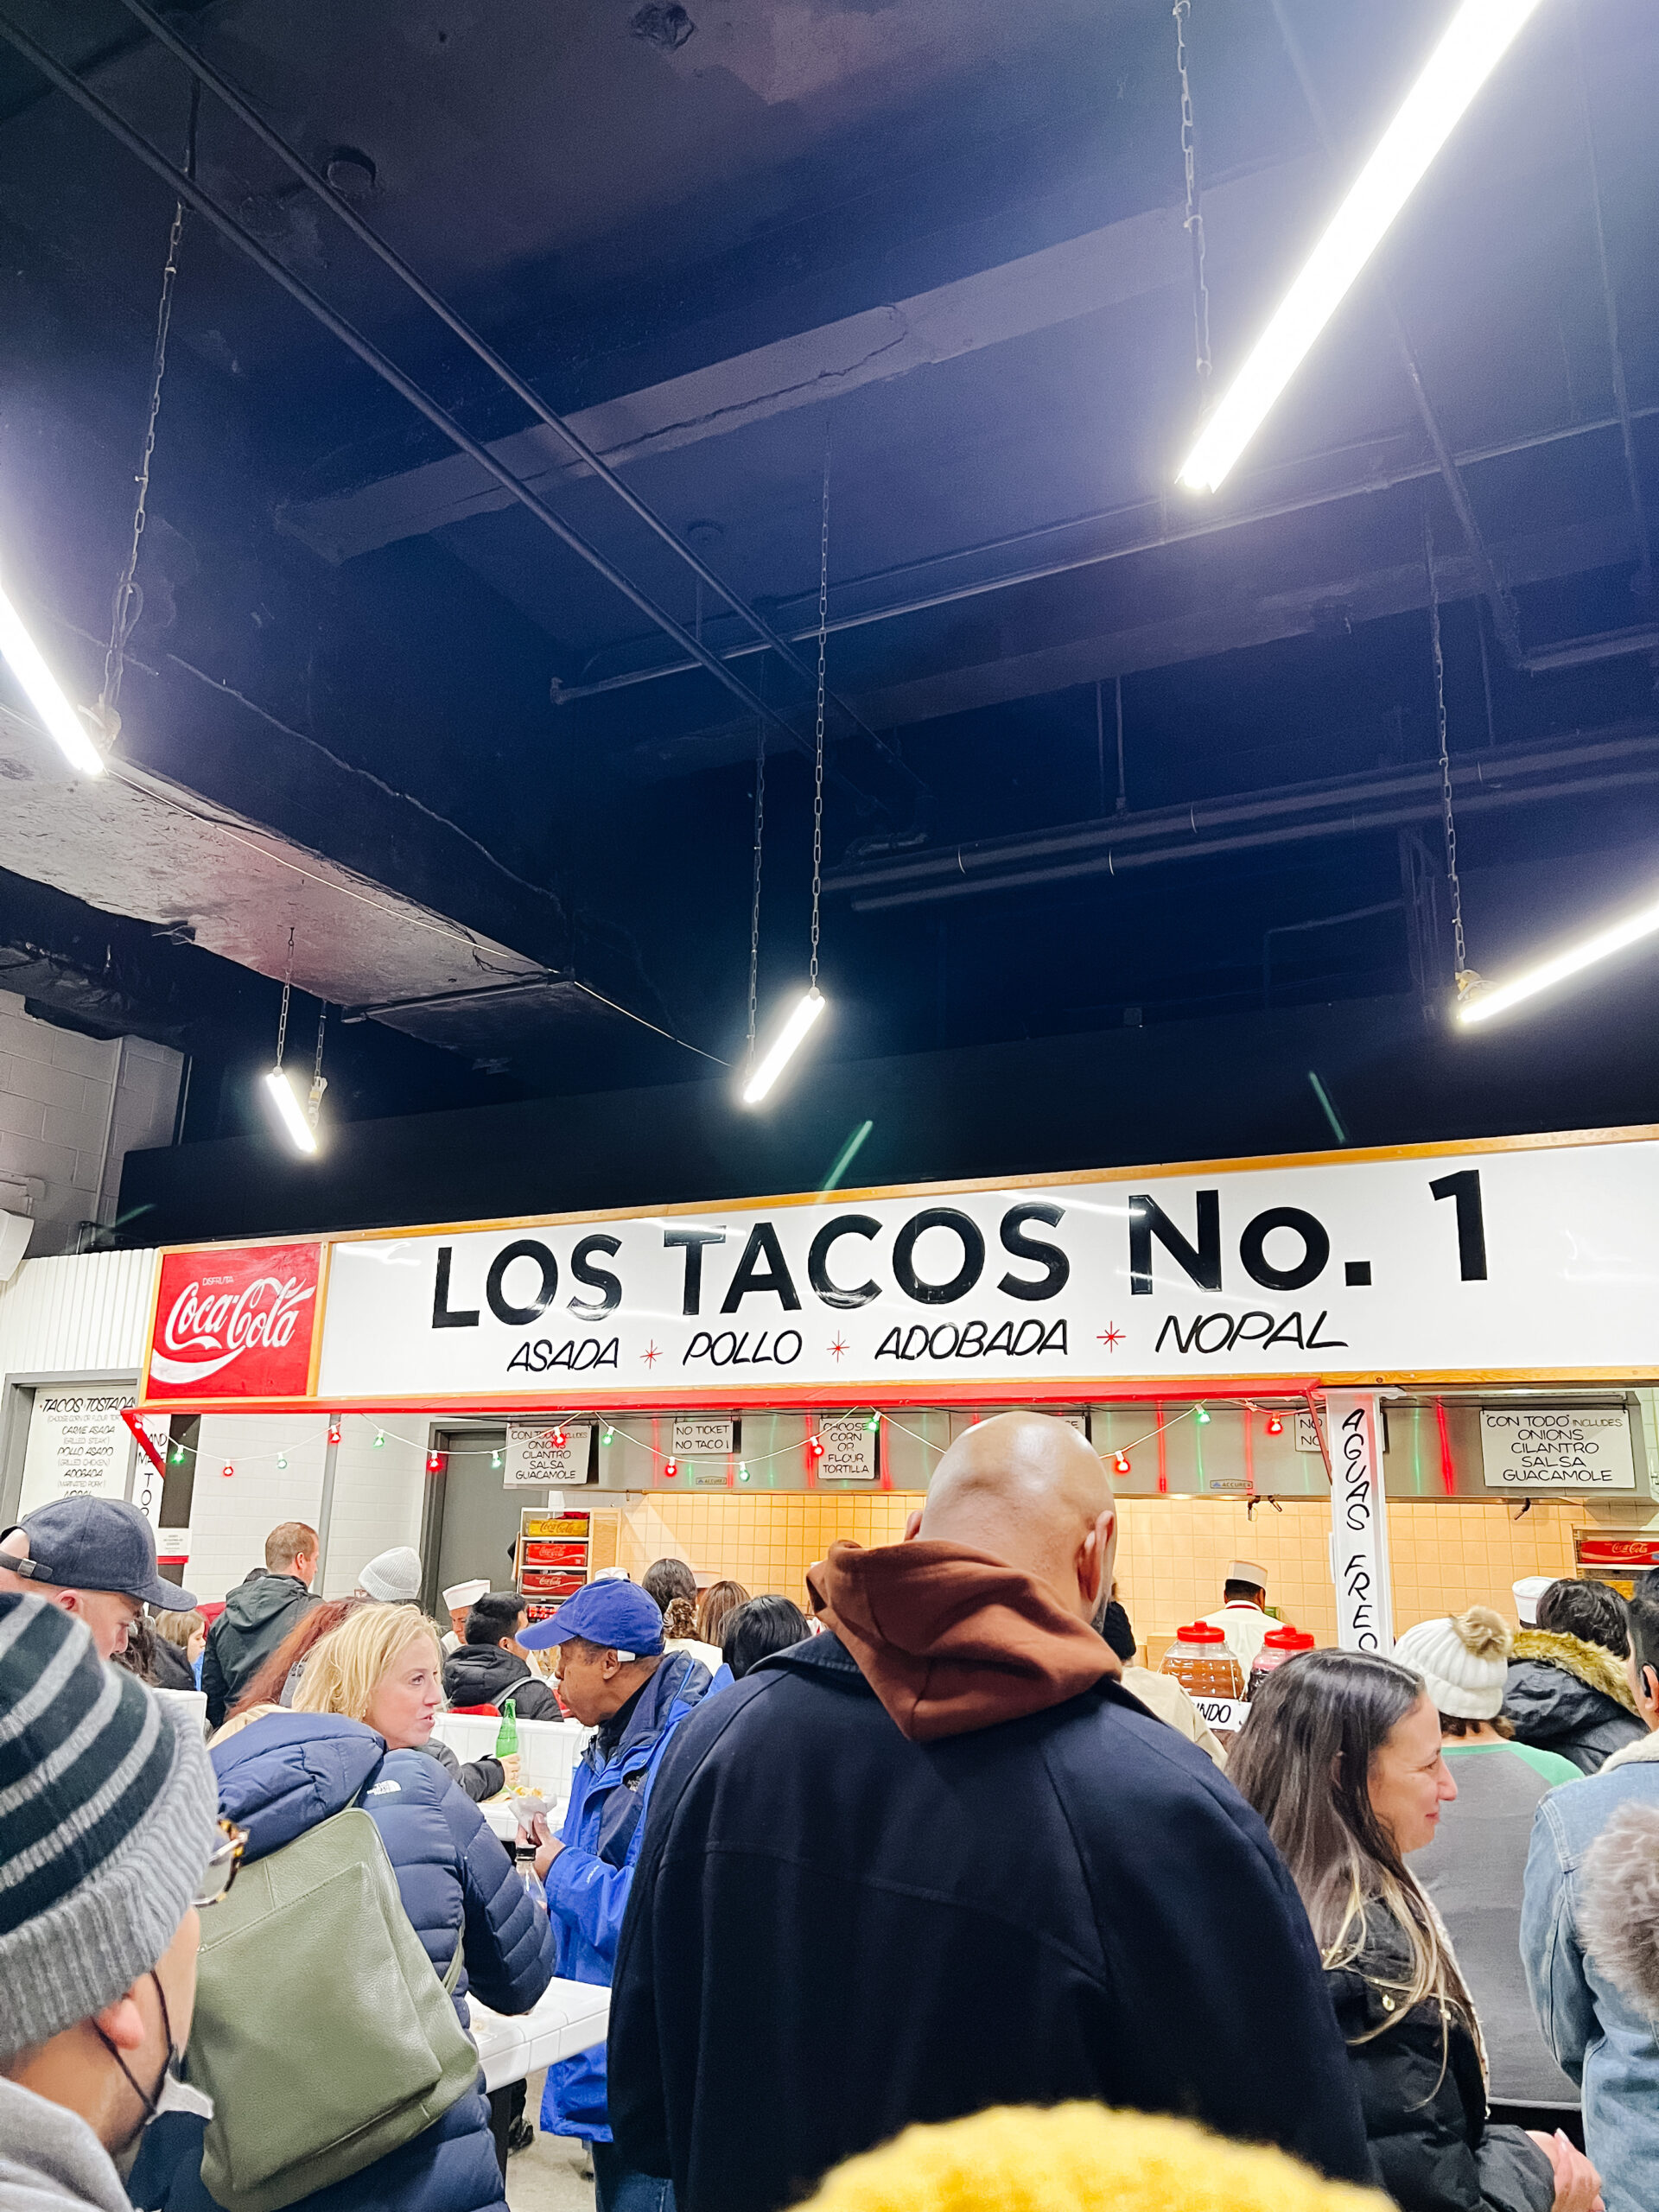 Los Tacos No 1 in New York City